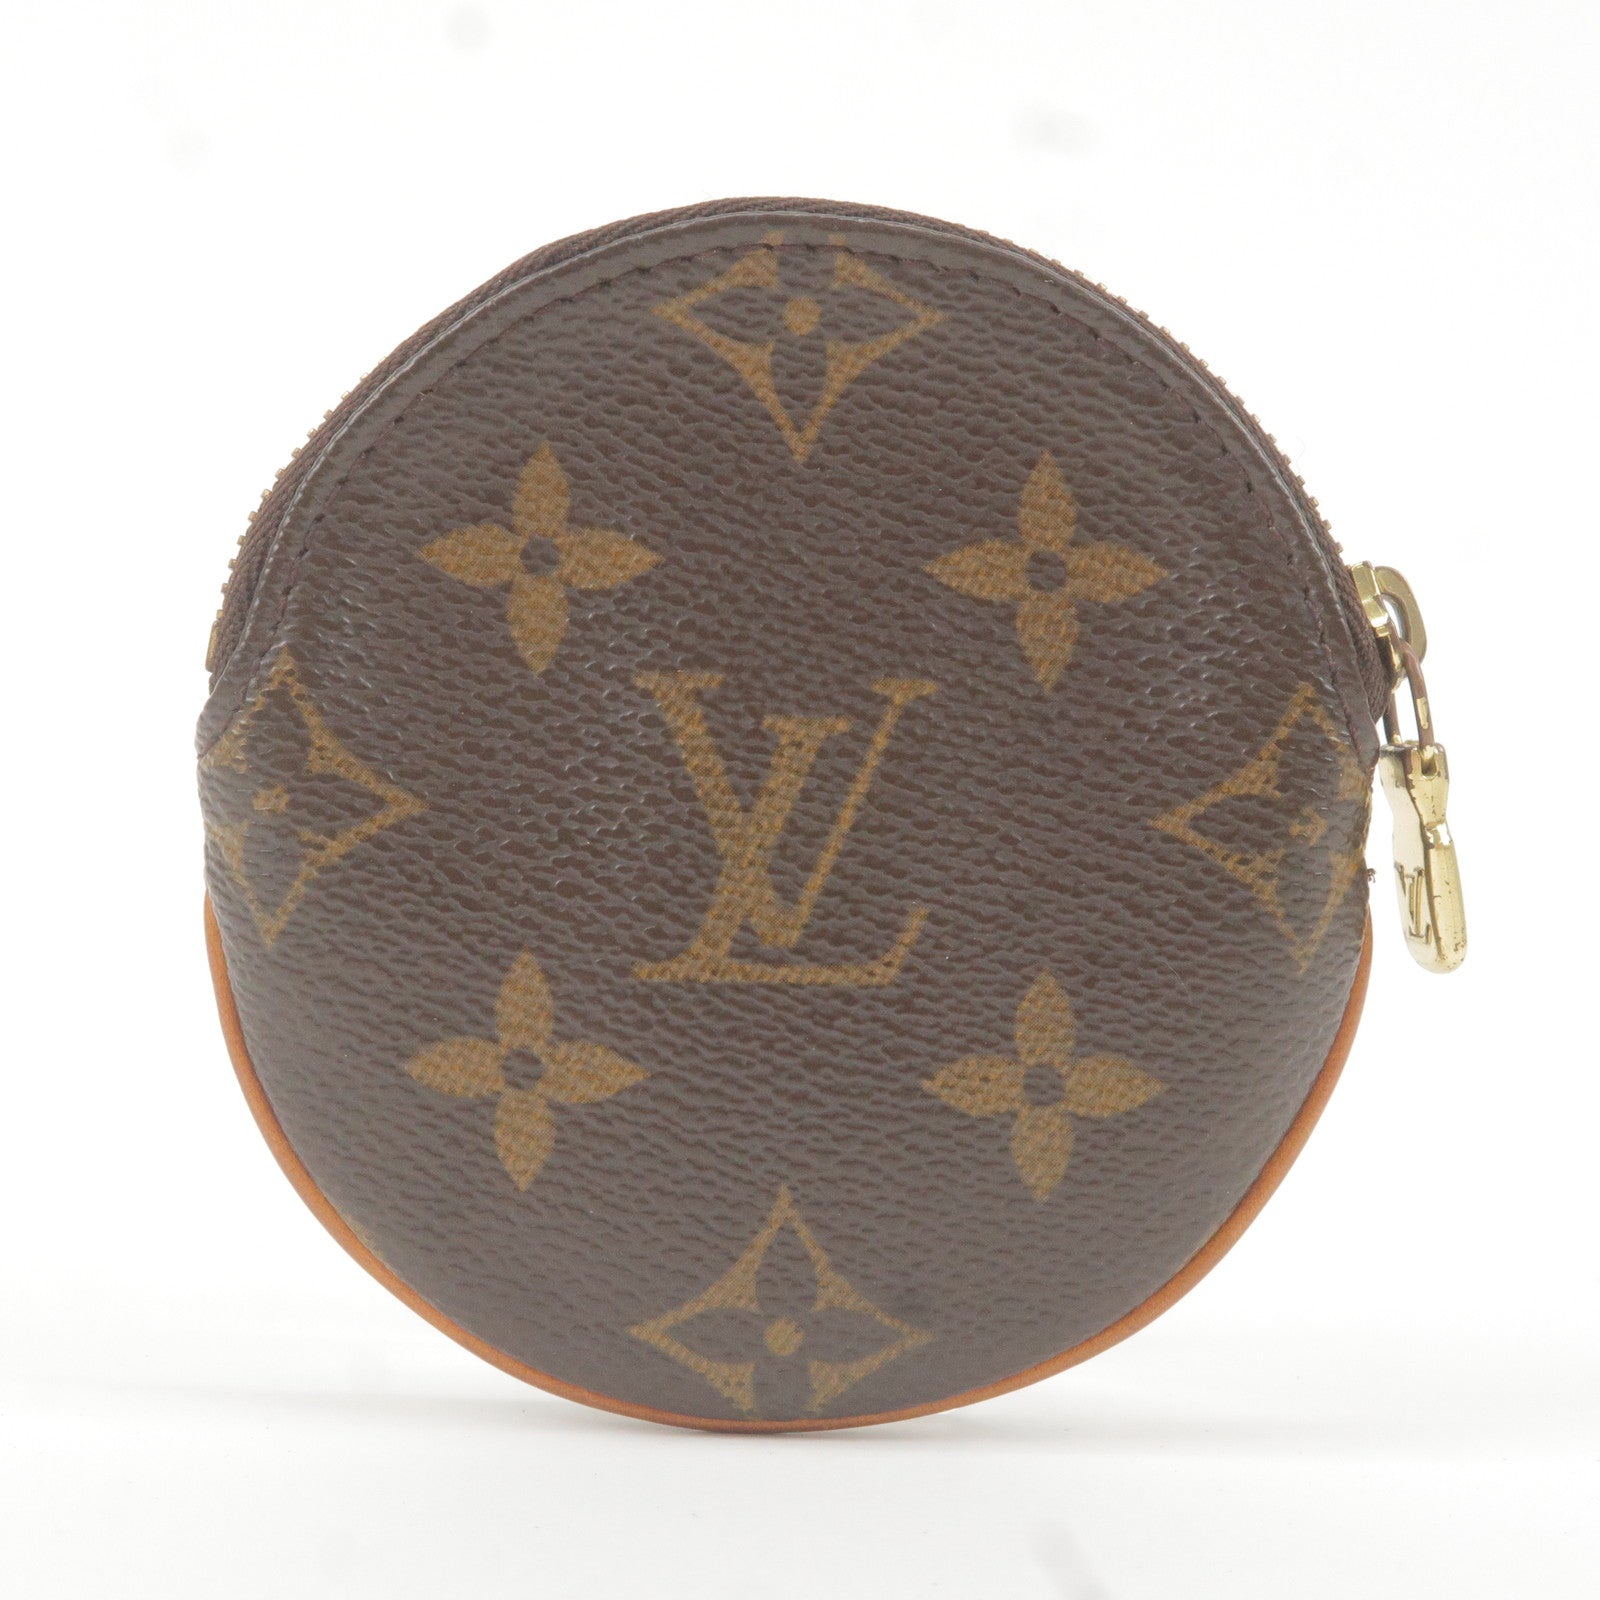 Louis Vuitton Limited Edition Monogram Cerises Porte Monnaie Coin